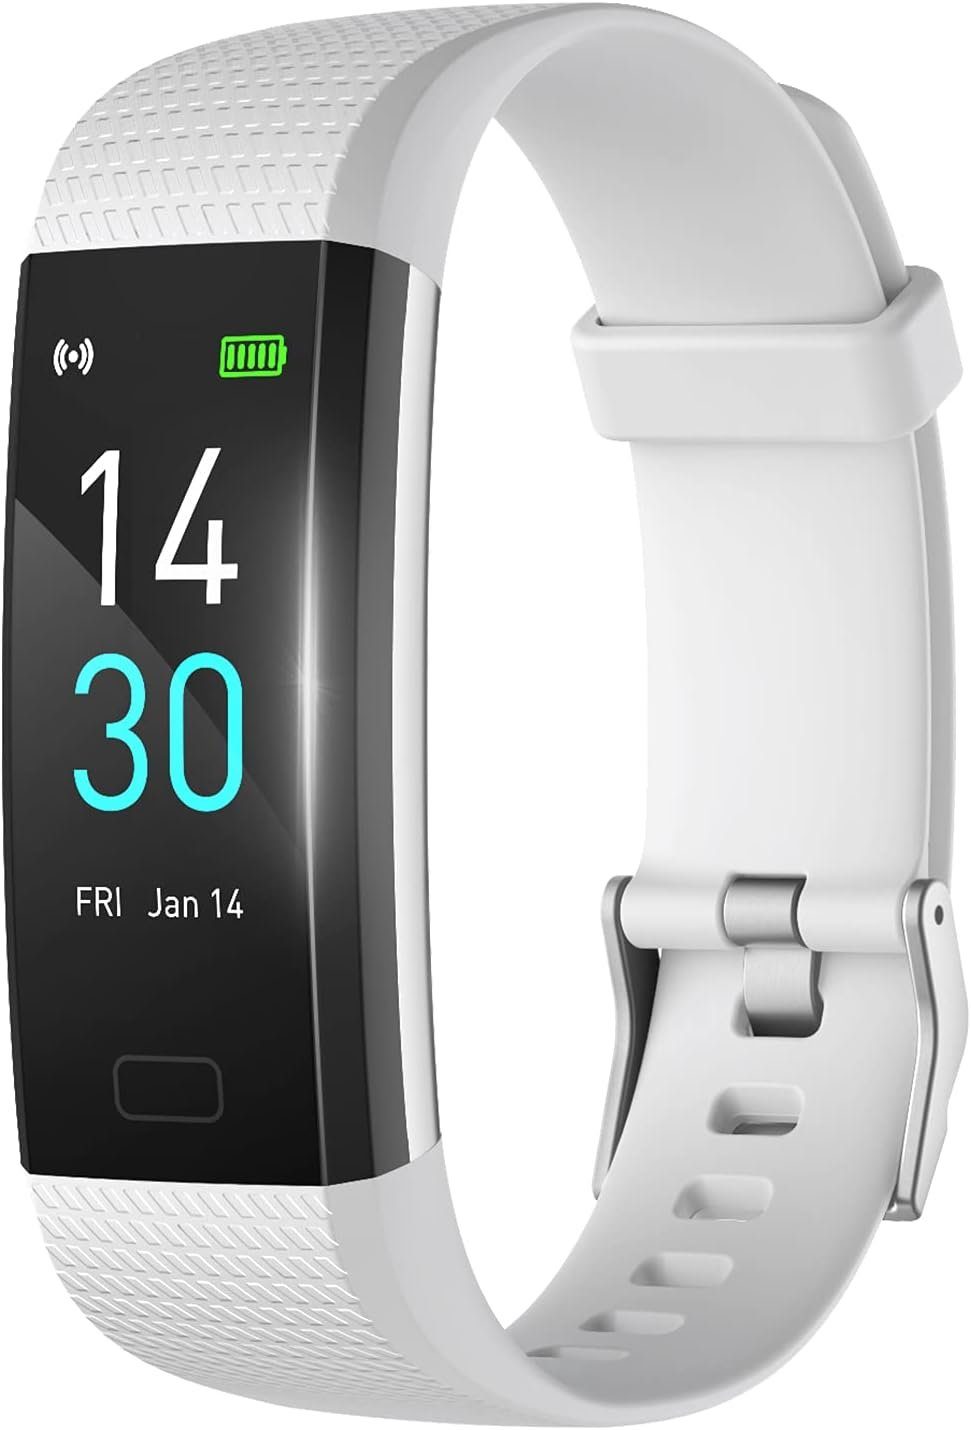 MicLee Fur Damen Herren Fitness Armband Wasserdicht IP68 Farbbildschirm Smartwatch (0,96 Zoll, Android iOS), Mit Aktivitätstracker Schrittzähler Sportuhr Anruf SMS Beachten